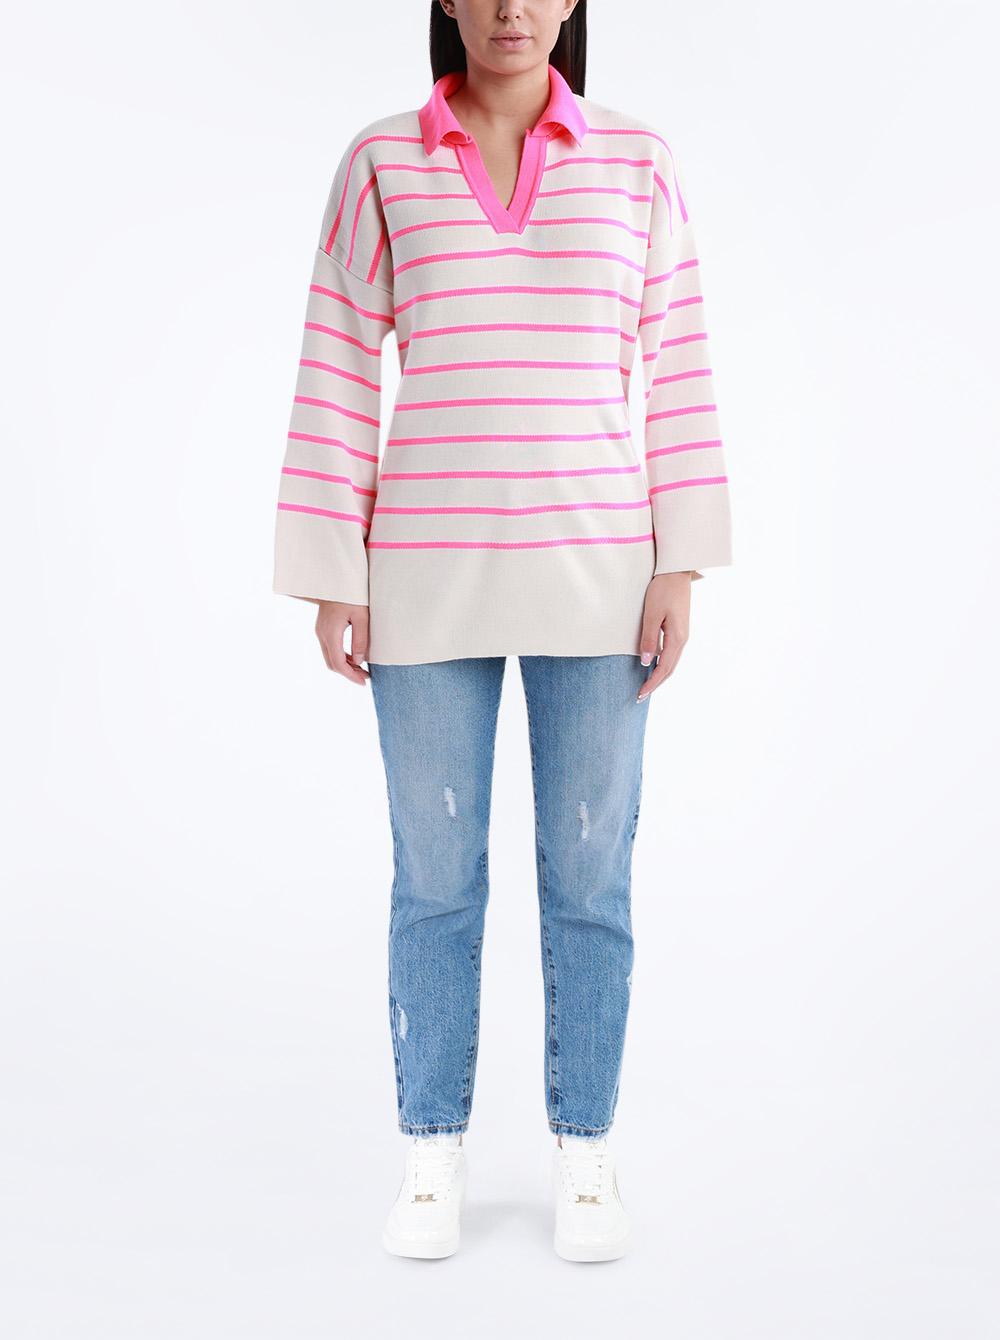 Selected image for QU STYLE Ženska džemper na pruge roze-beli